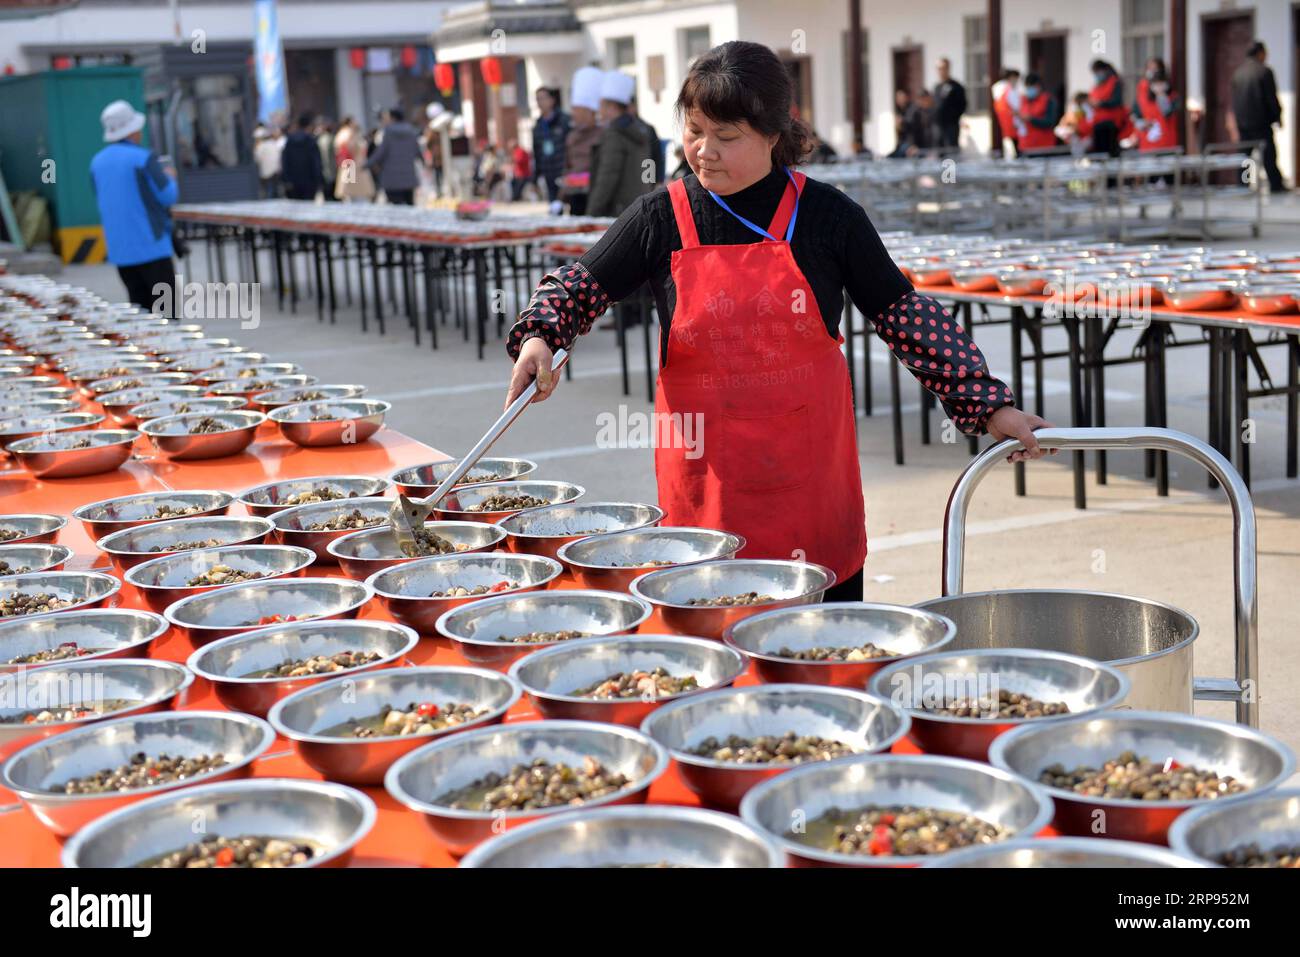 (190324) - HUAI AN, 24 marzo 2019 (Xinhua) -- Un server distribuisce piatti fatti di luosi, una sorta di lumaca di fiume, durante una festa tenutasi nella città di Jiangba del distretto di Hongze della città di Huai An, provincia di Jiangsu della Cina orientale, 23 marzo 2019. I piatti di Luosi sono solitamente venduti nelle bancarelle di strada in Cina. (Xinhua/Chen Liang) CHINA-JIANGSU-LUOSI FESTA (CN) PUBLICATIONxNOTxINxCHN Foto Stock